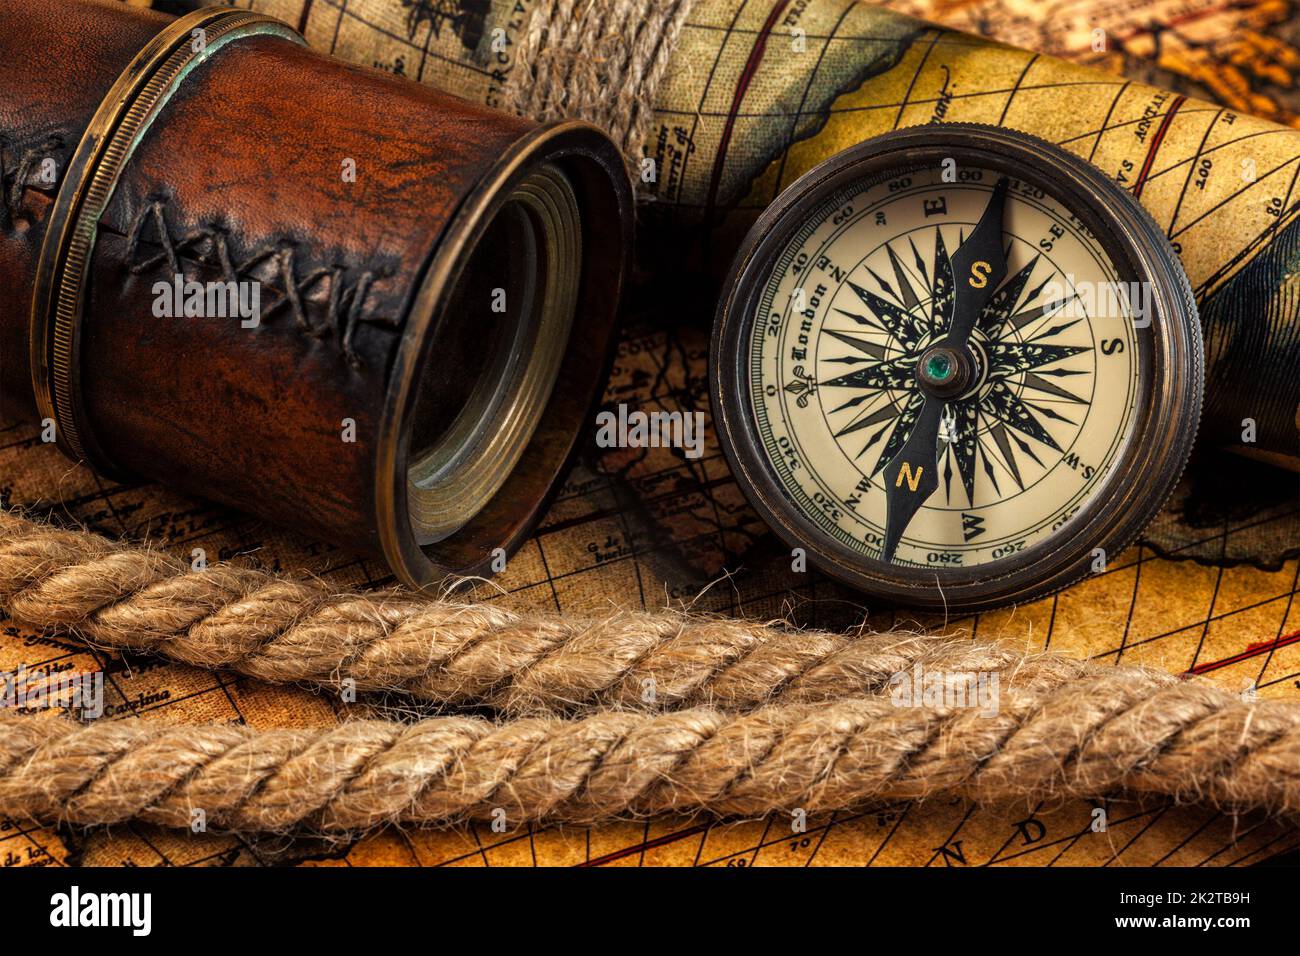 Old vintage compas et instruments de navigation sur carte ancienne Banque D'Images